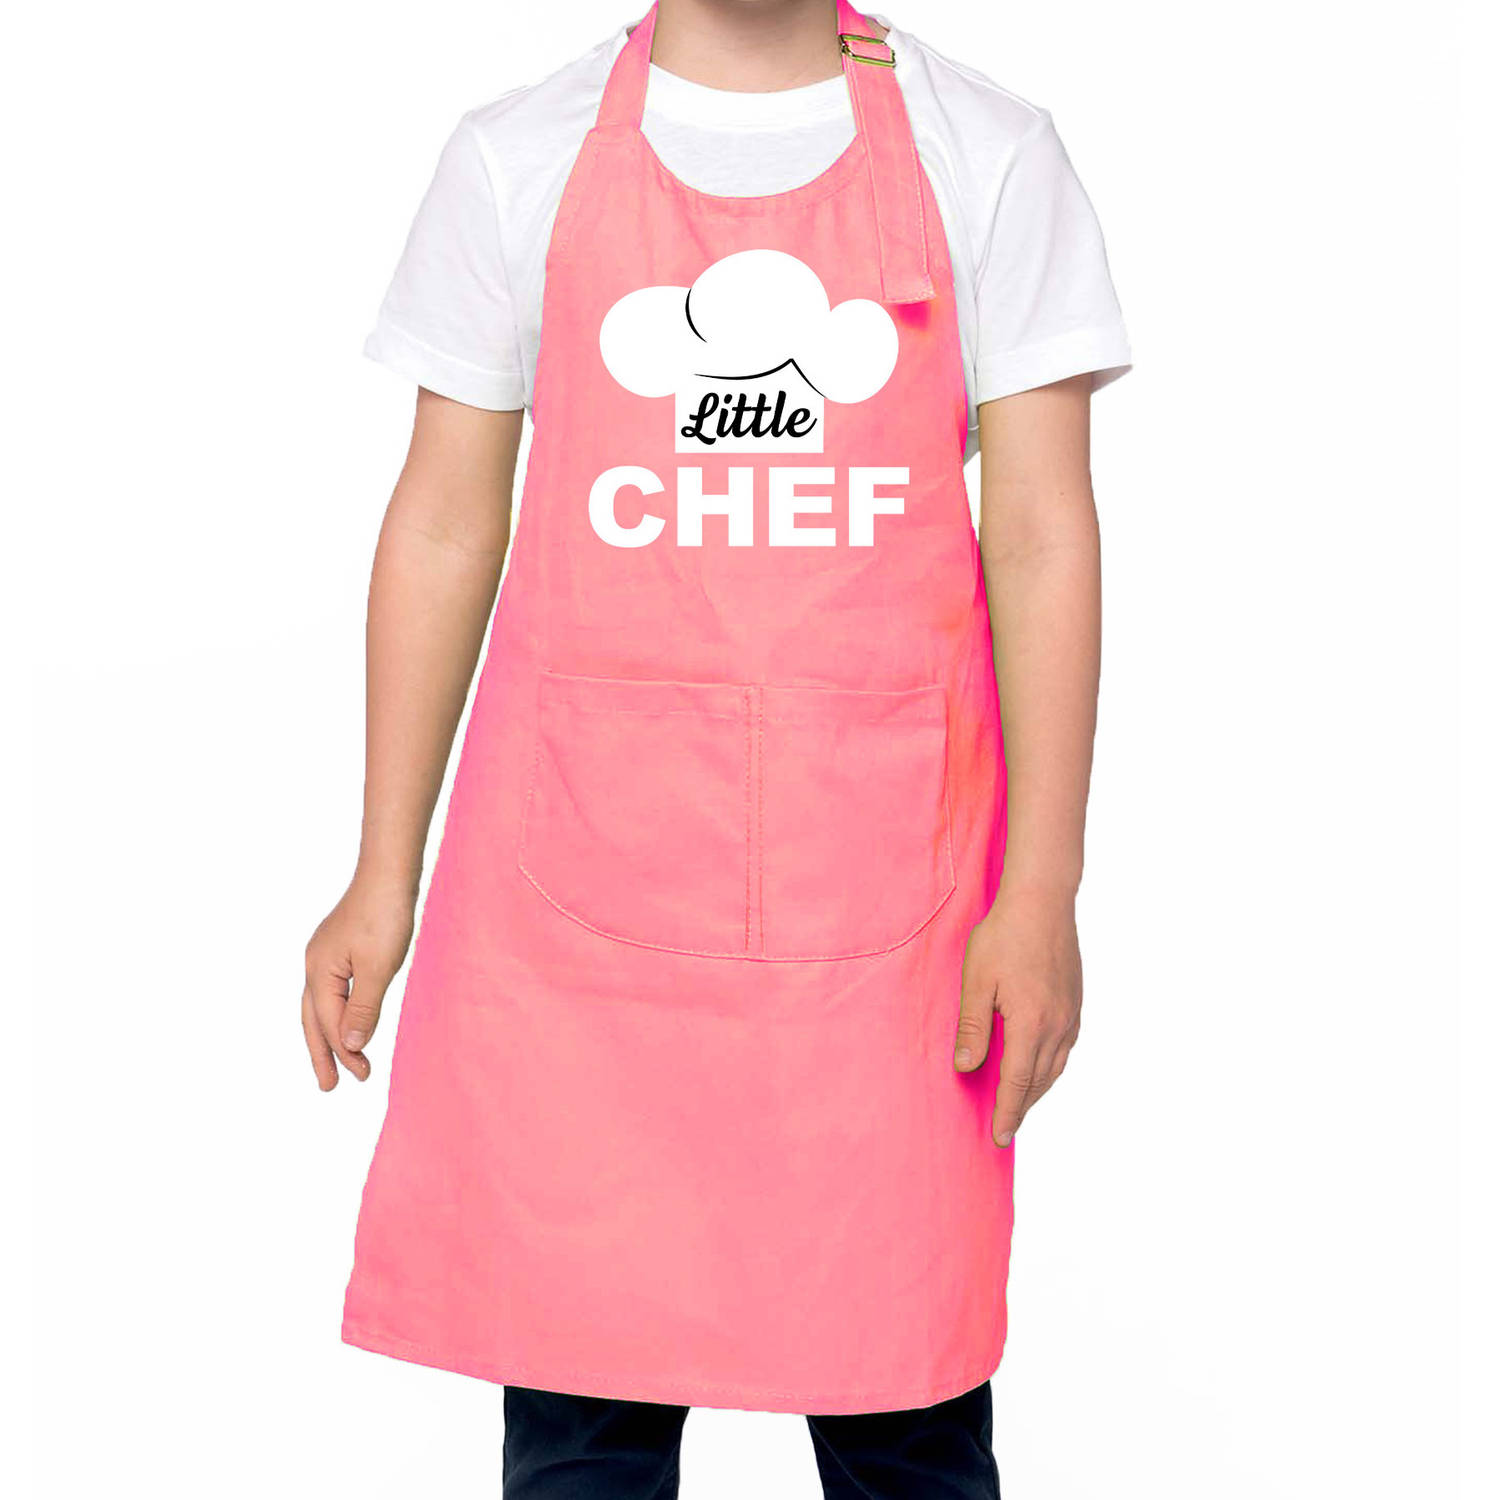 Little Chef Keukenschort Kinderen- Kinder Schort Roze Voor Jongens En Meisjes Feestschorten